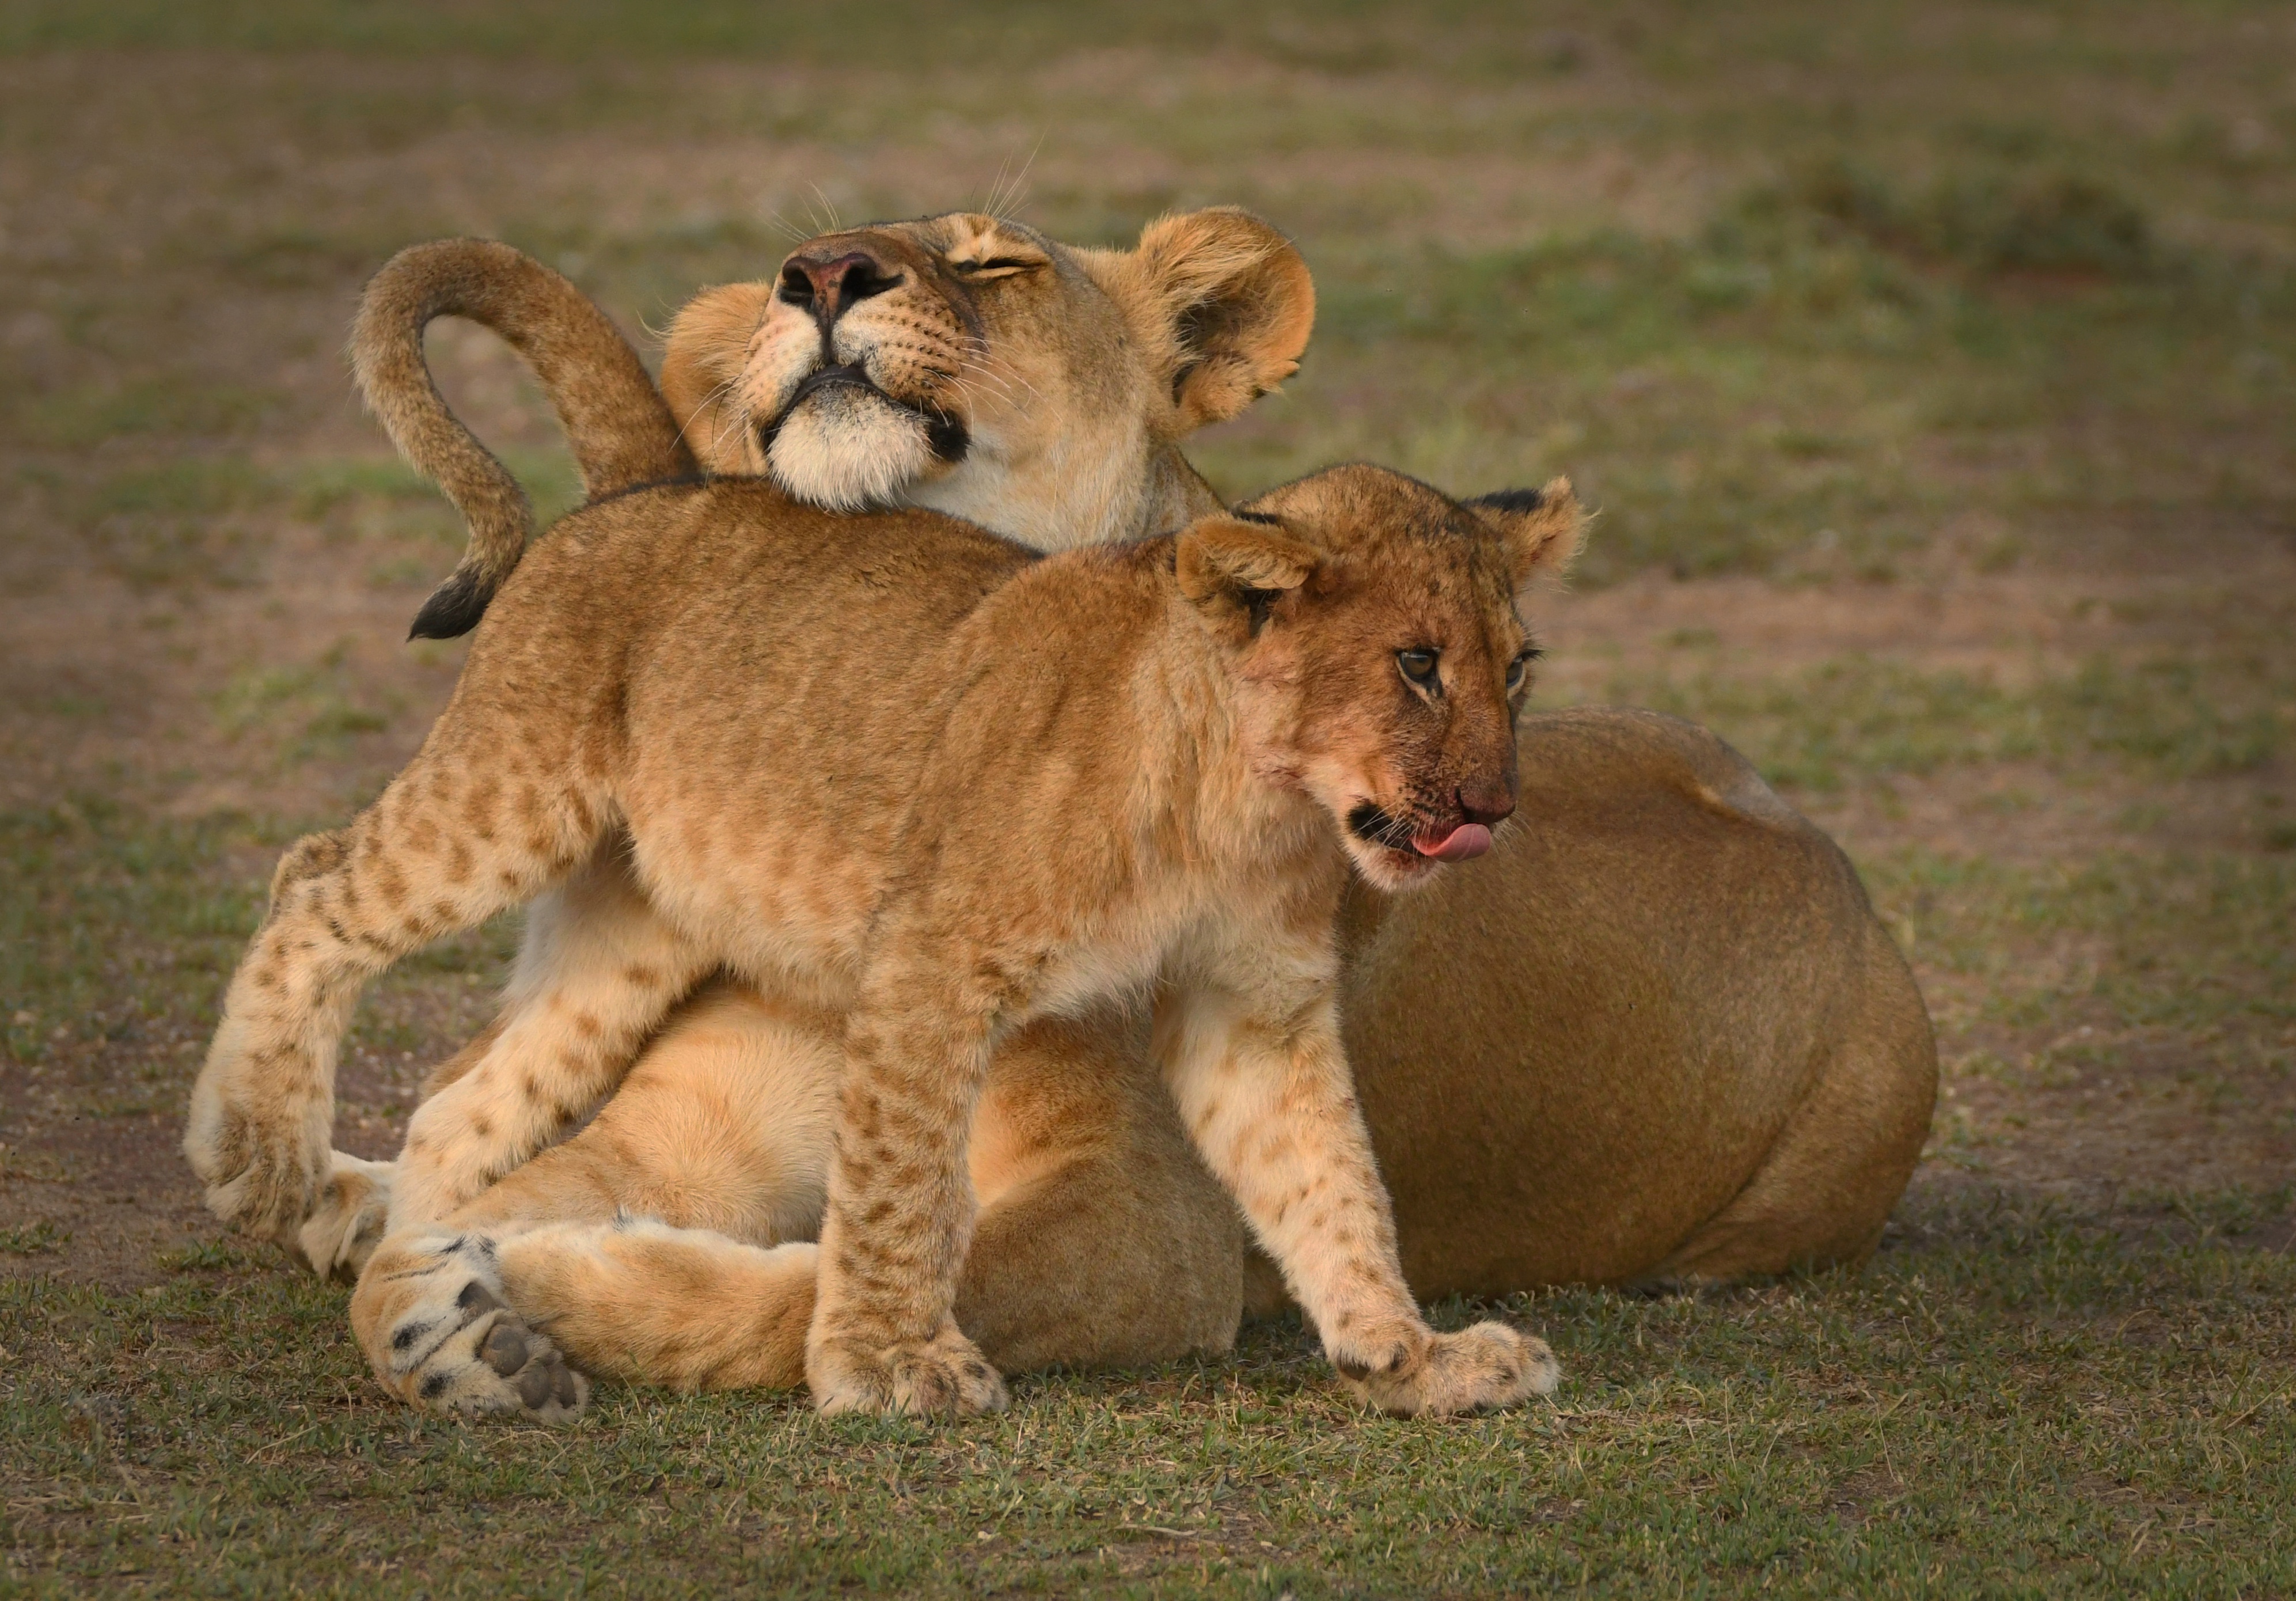 Descarga gratuita de fondo de pantalla para móvil de Animales, Gatos, León, Cachorro, Bebe Animal, Reserva Nacional Masai Mara, Kenia.